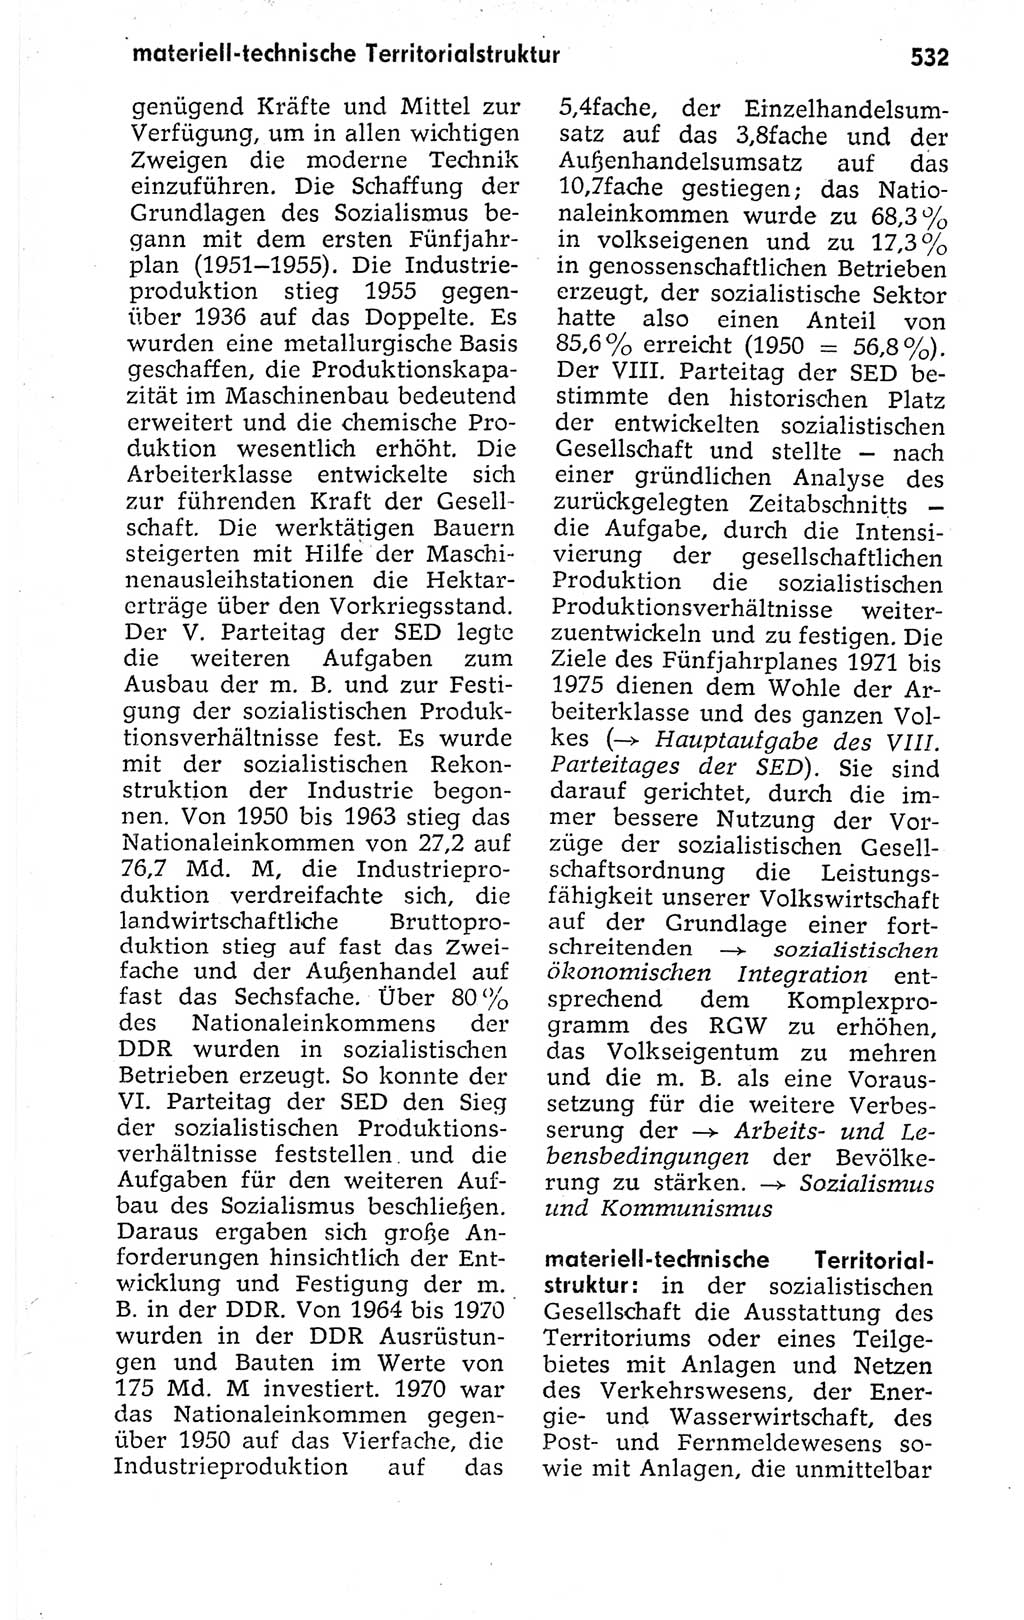 Kleines politisches Wörterbuch [Deutsche Demokratische Republik (DDR)] 1973, Seite 532 (Kl. pol. Wb. DDR 1973, S. 532)